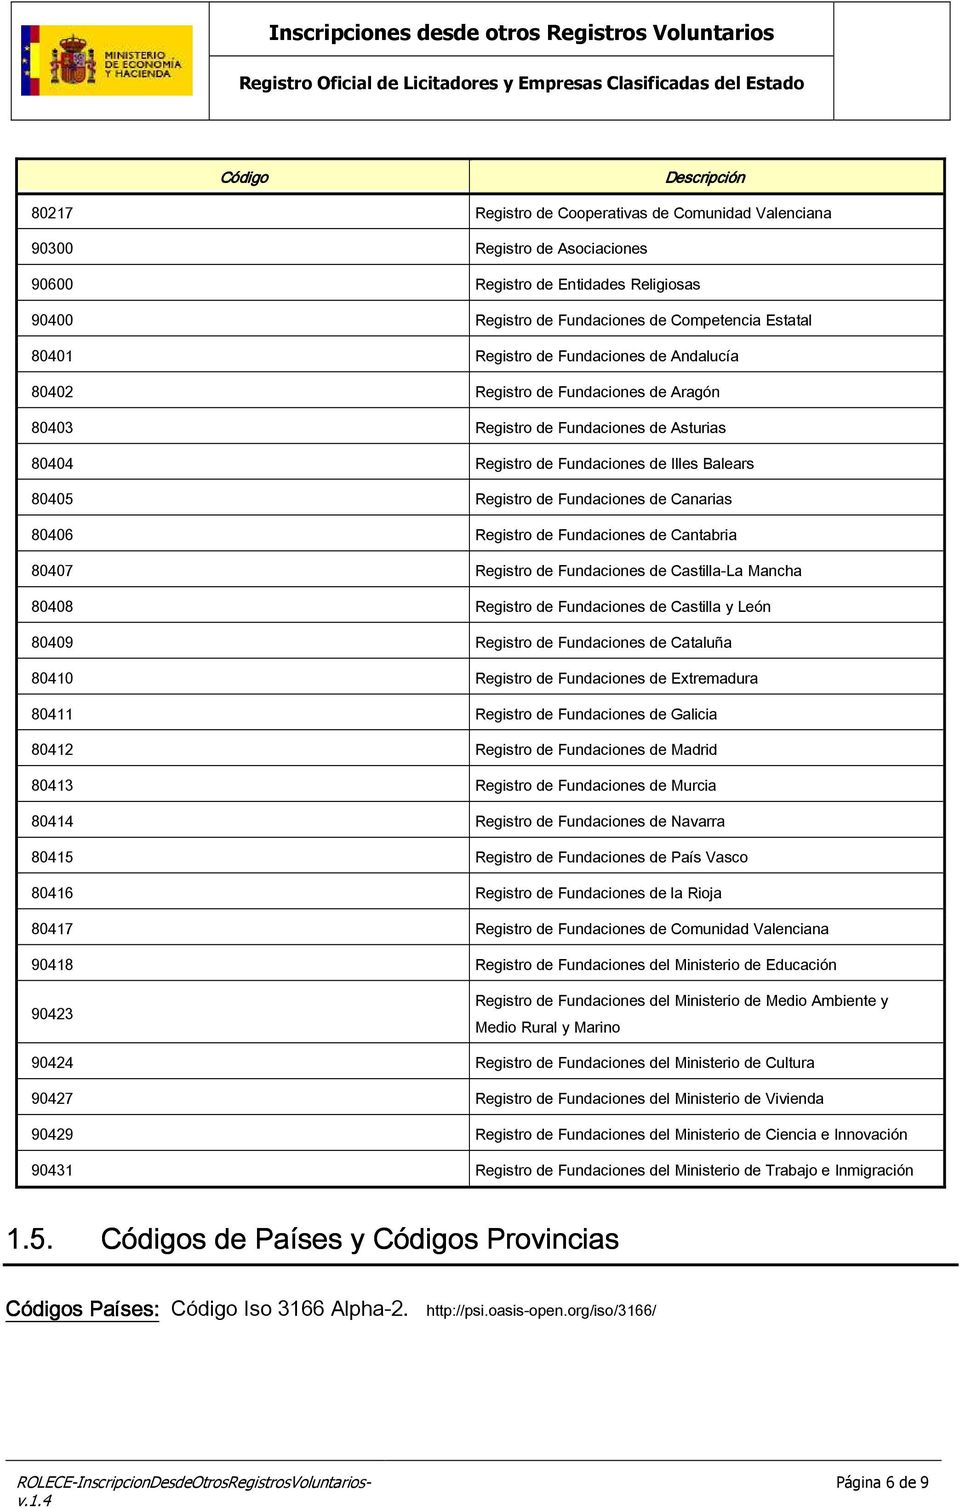 80406 Registro de Fundaciones de Cantabria 80407 Registro de Fundaciones de Castilla-La Mancha 80408 Registro de Fundaciones de Castilla y León 80409 Registro de Fundaciones de Cataluña 80410